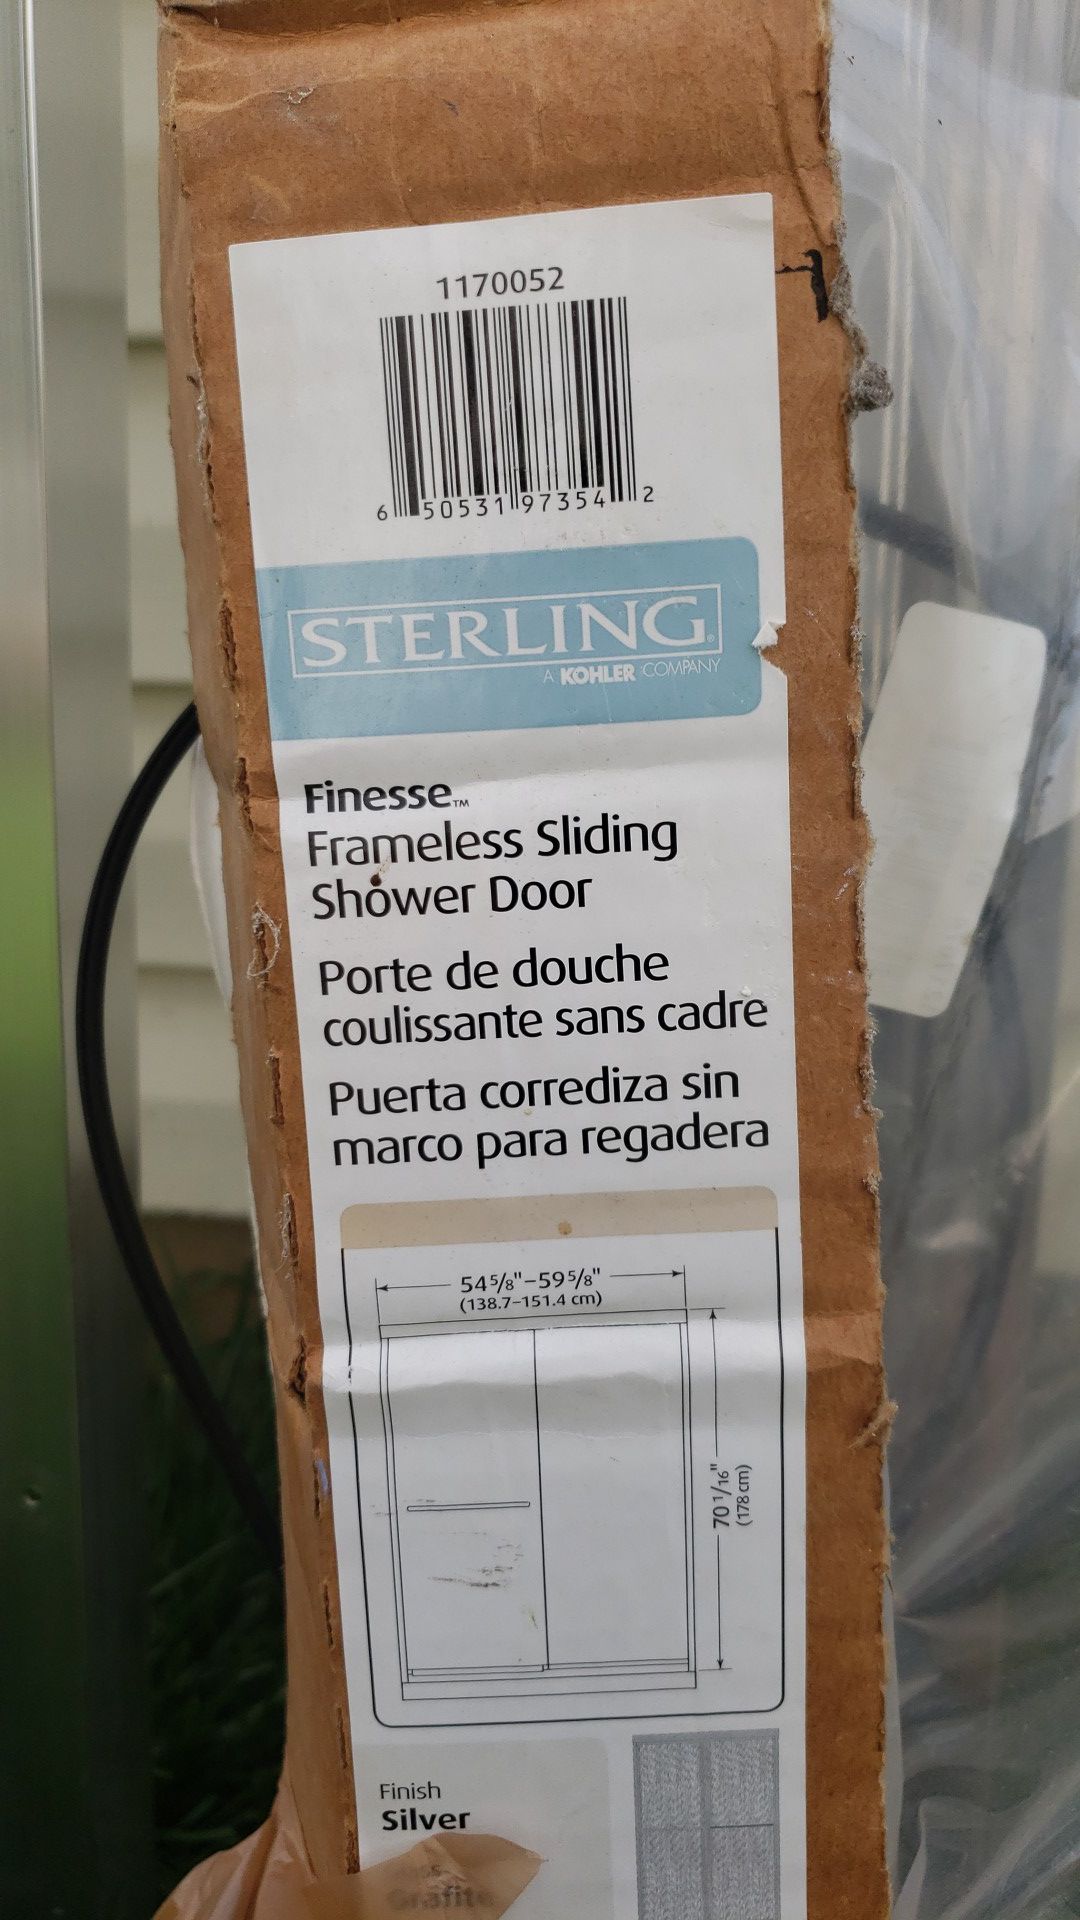 Sterling frameless sliding shower door